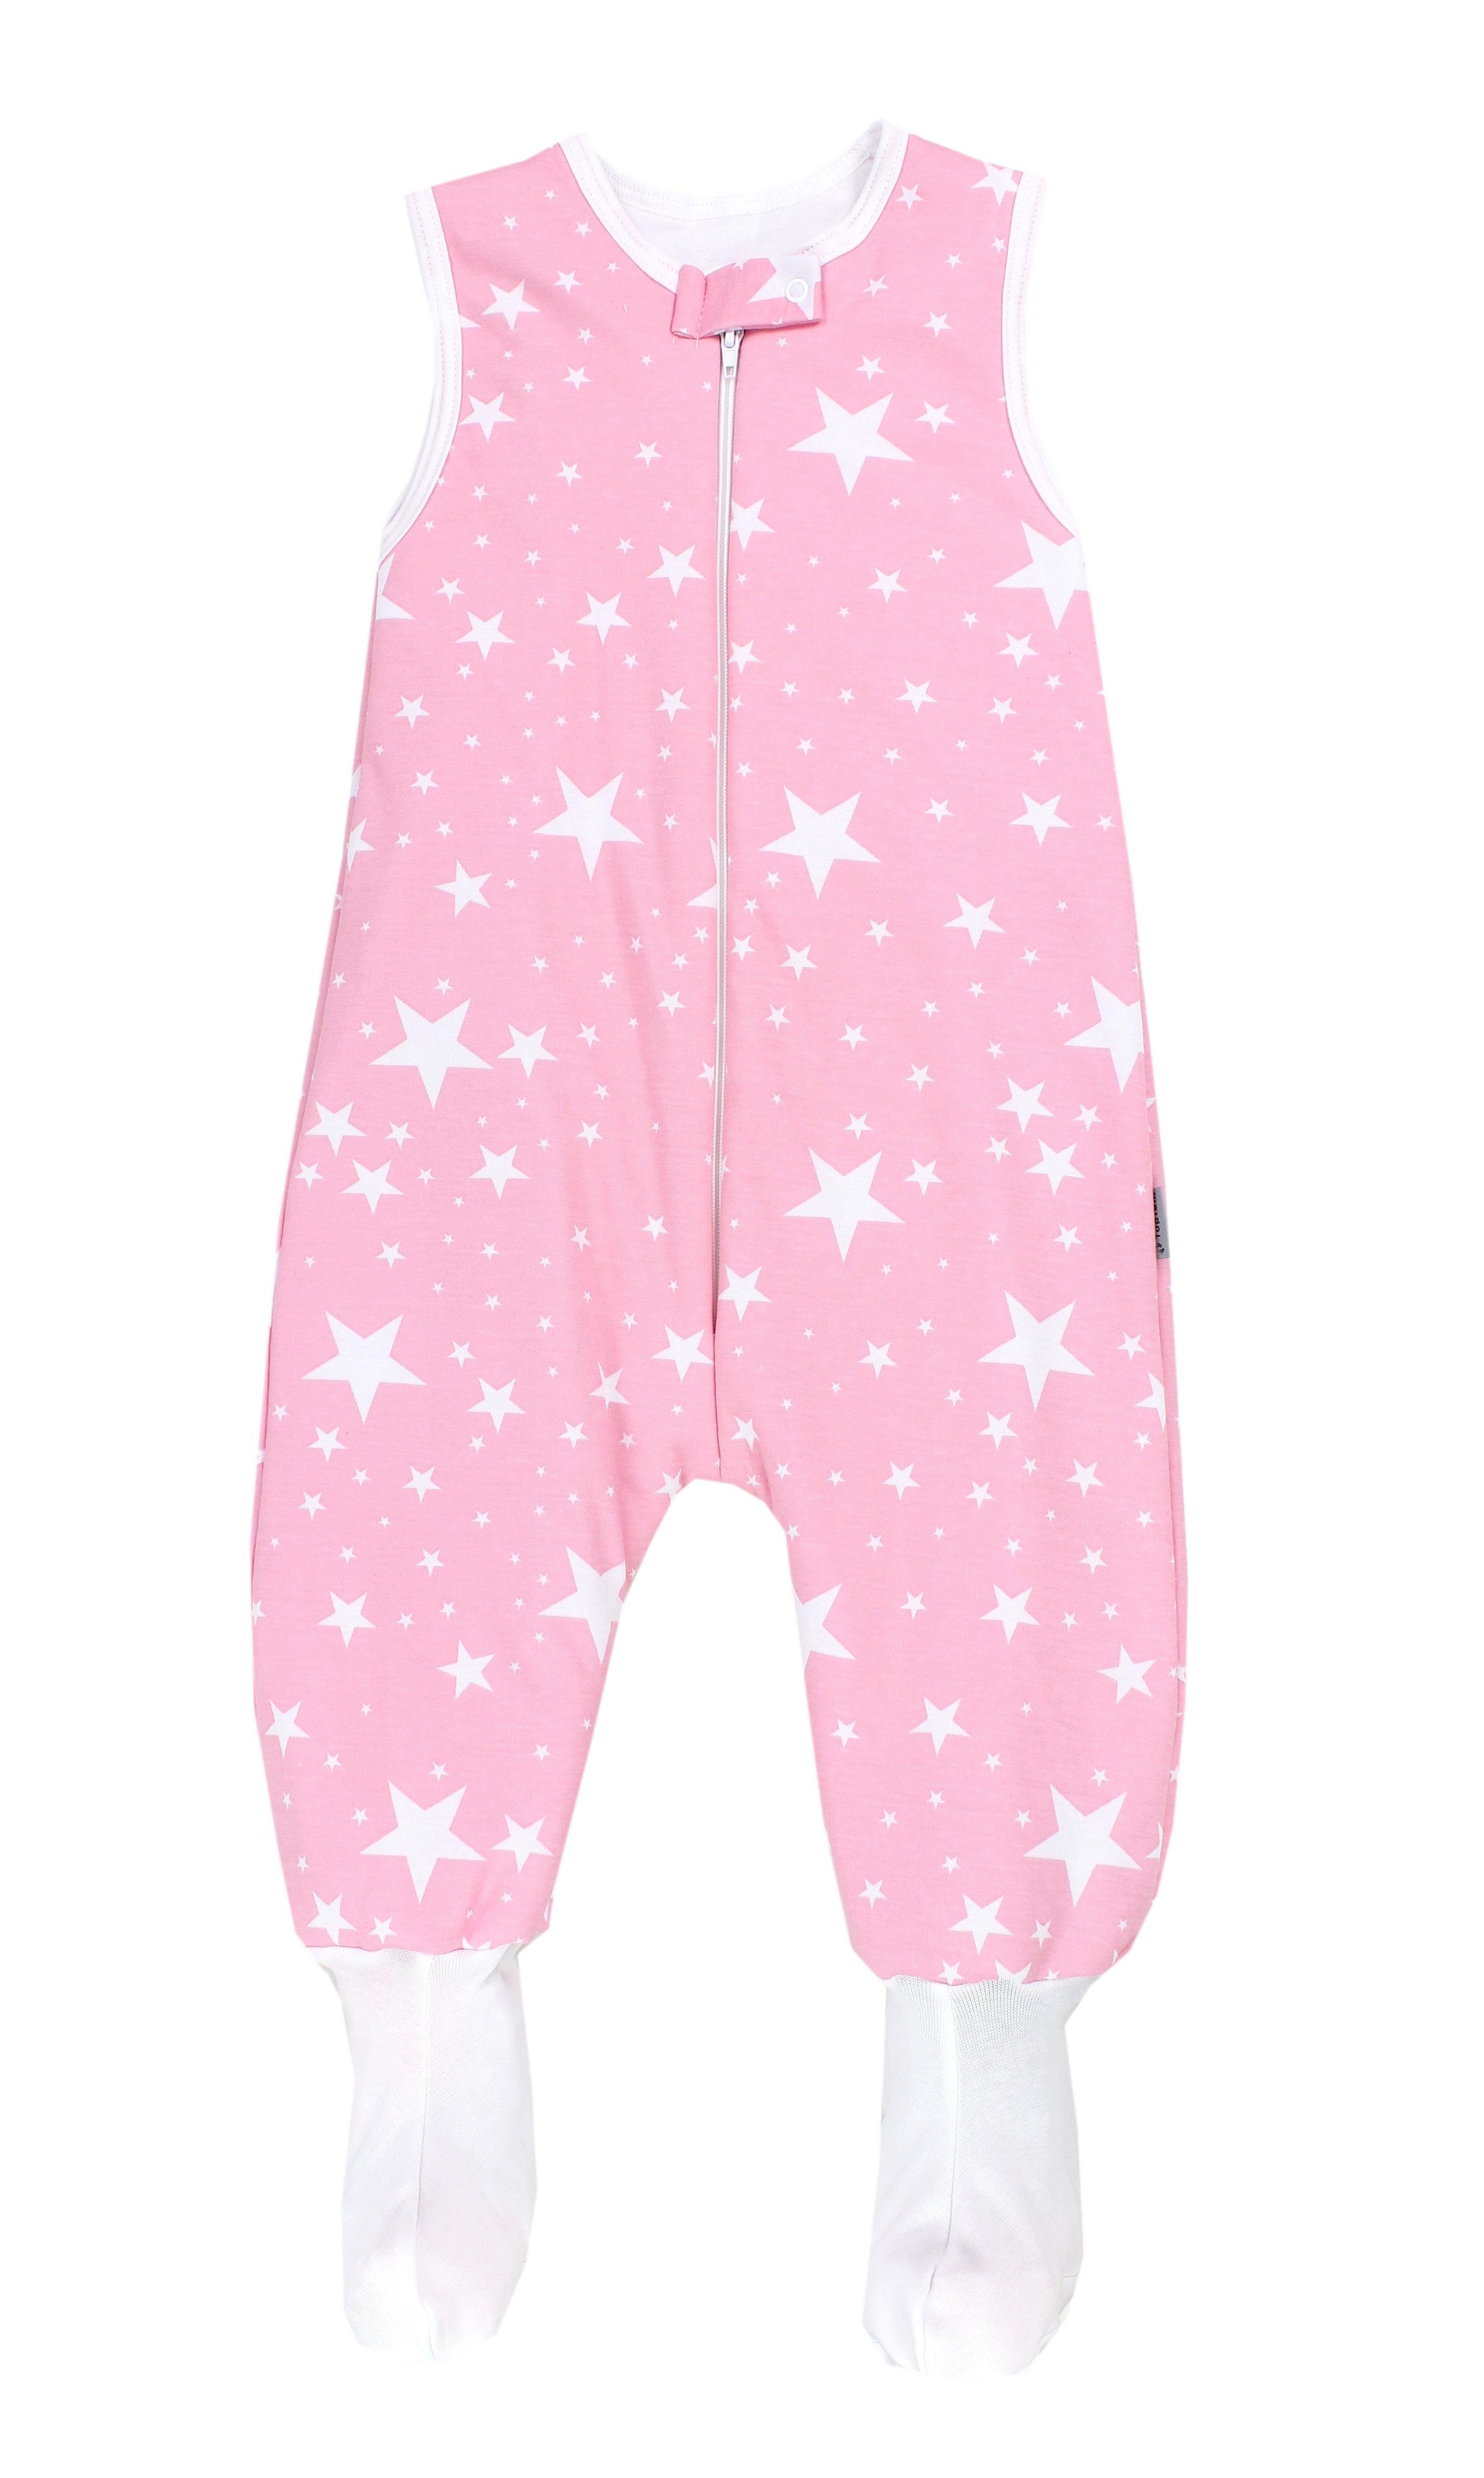 / Winterschlafsack Rosa OEKO-TEX Füßen Weiße Sterne mit 2.5 zertifiziert, Babyschlafsack Beinen TOG und TupTam